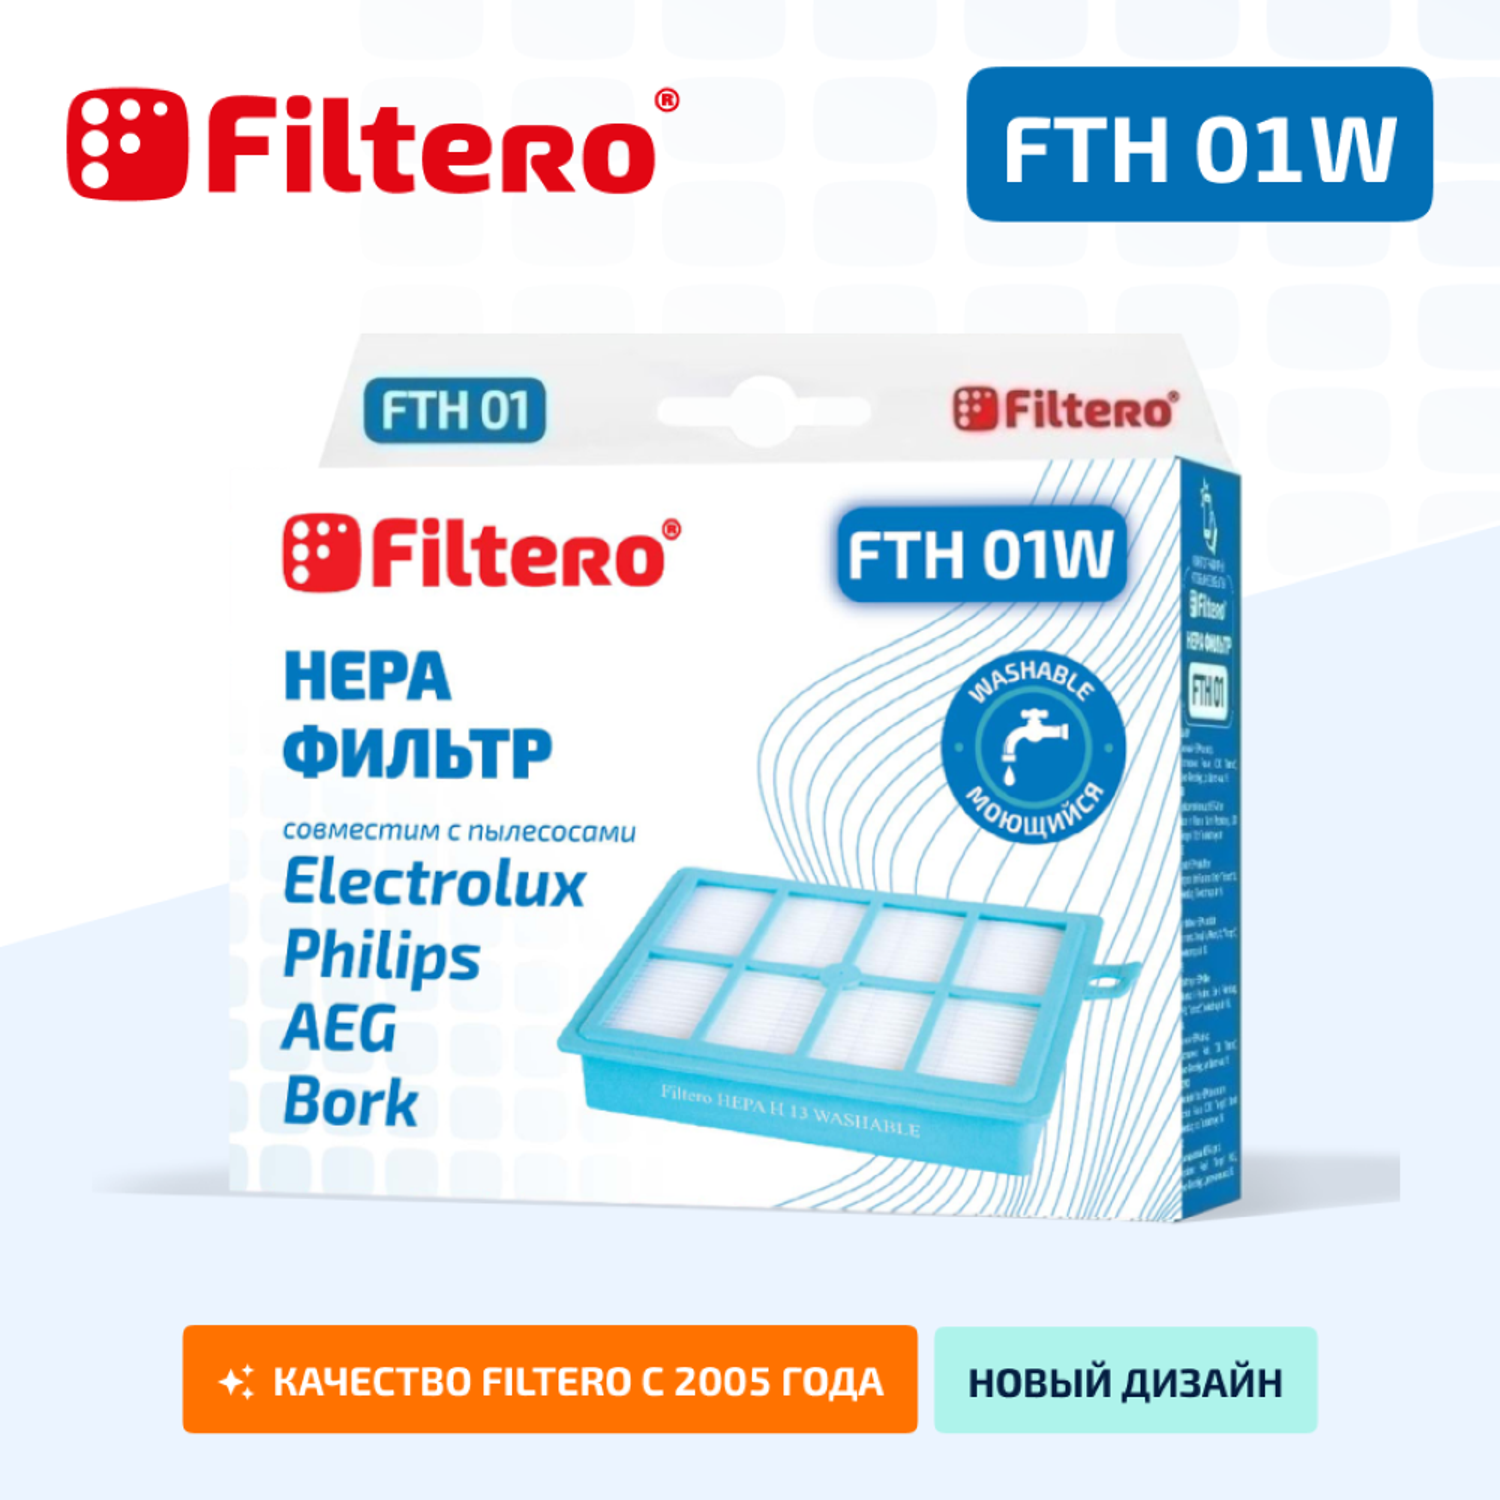 Фильтр HEPA Filtero для пылесосов Electrolux и Philips FTH 01 W Elx моющийся - фото 2